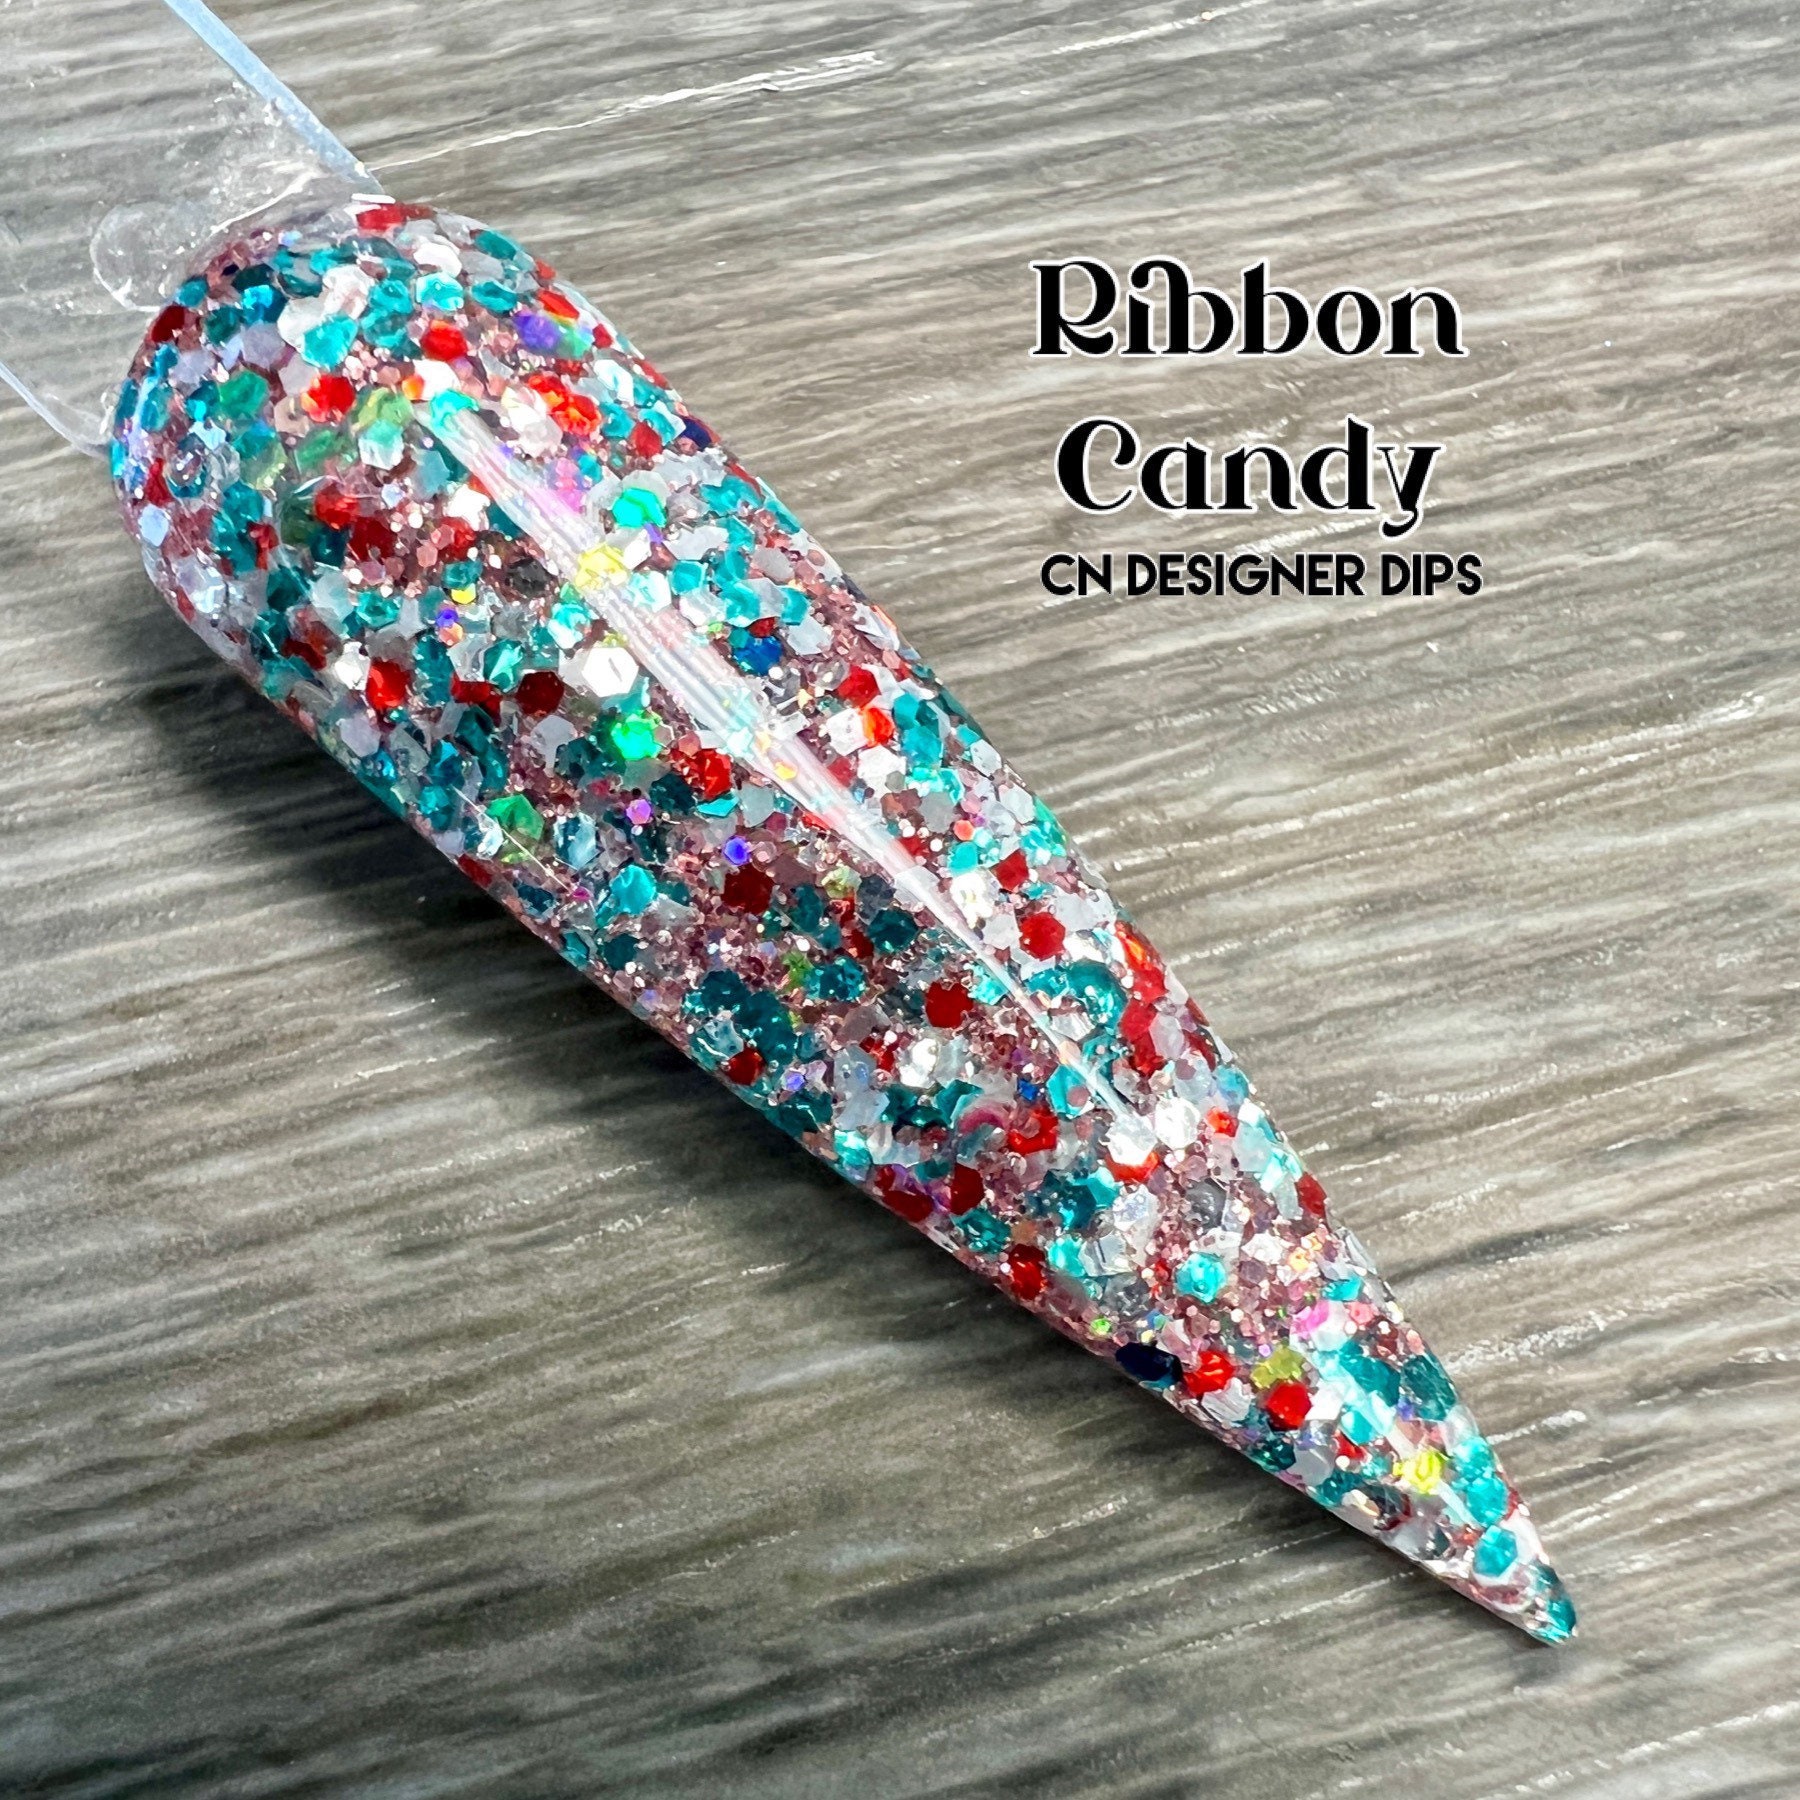 Ribbon Candy - Dip Pulver, Pulver Für Nägel, Nagel Dip, Glitter Acryl, Acrylpulver von Etsy - CNDesignerDips